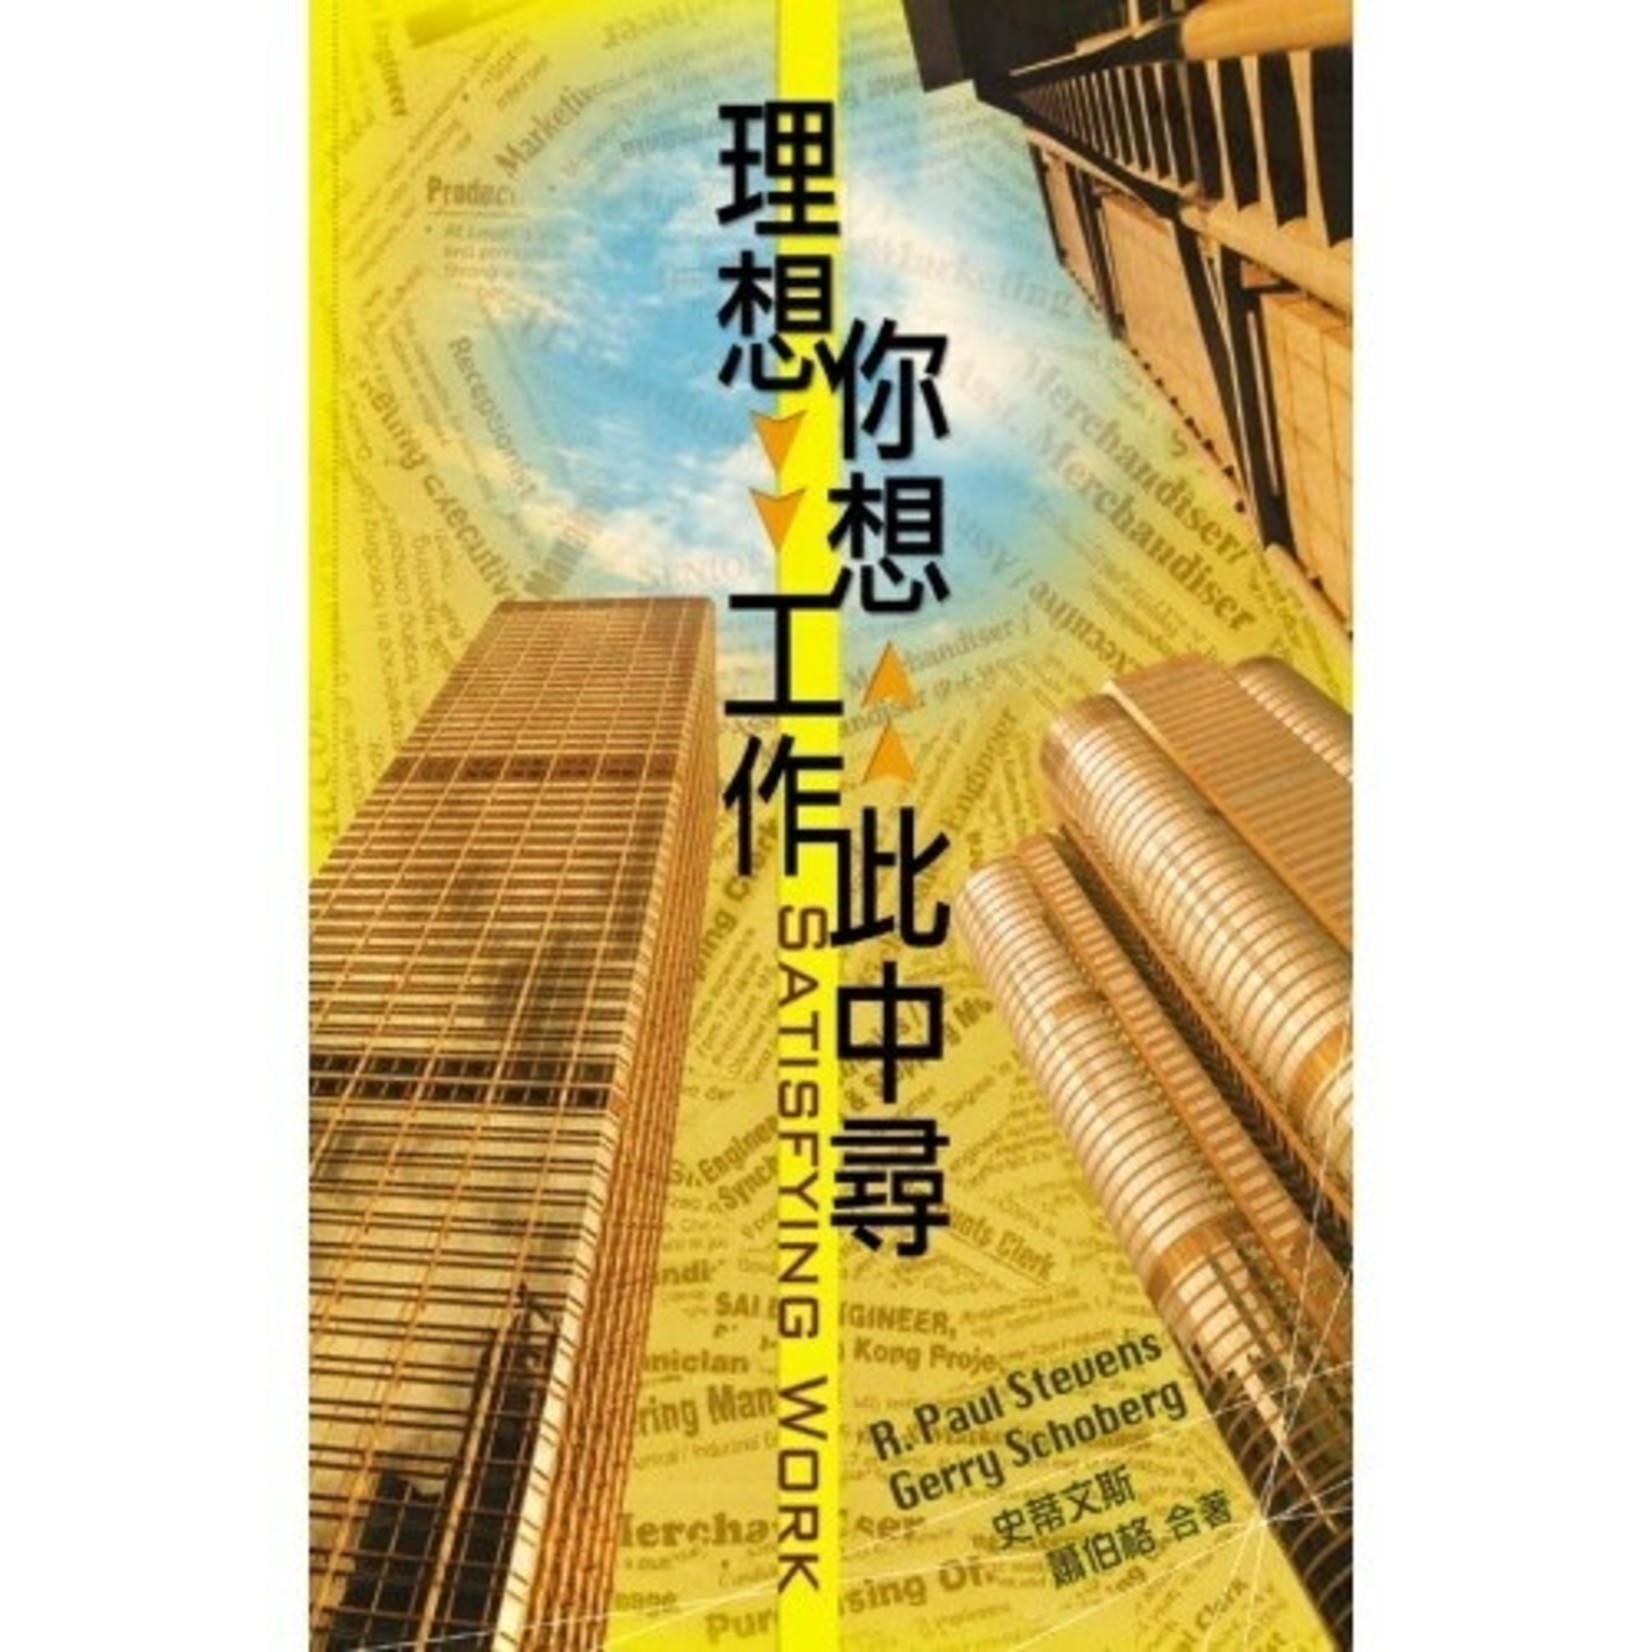 天道書樓 Tien Dao Publishing House 理想、你想工作此中尋 | Satisfying work : Christian living from nine to five